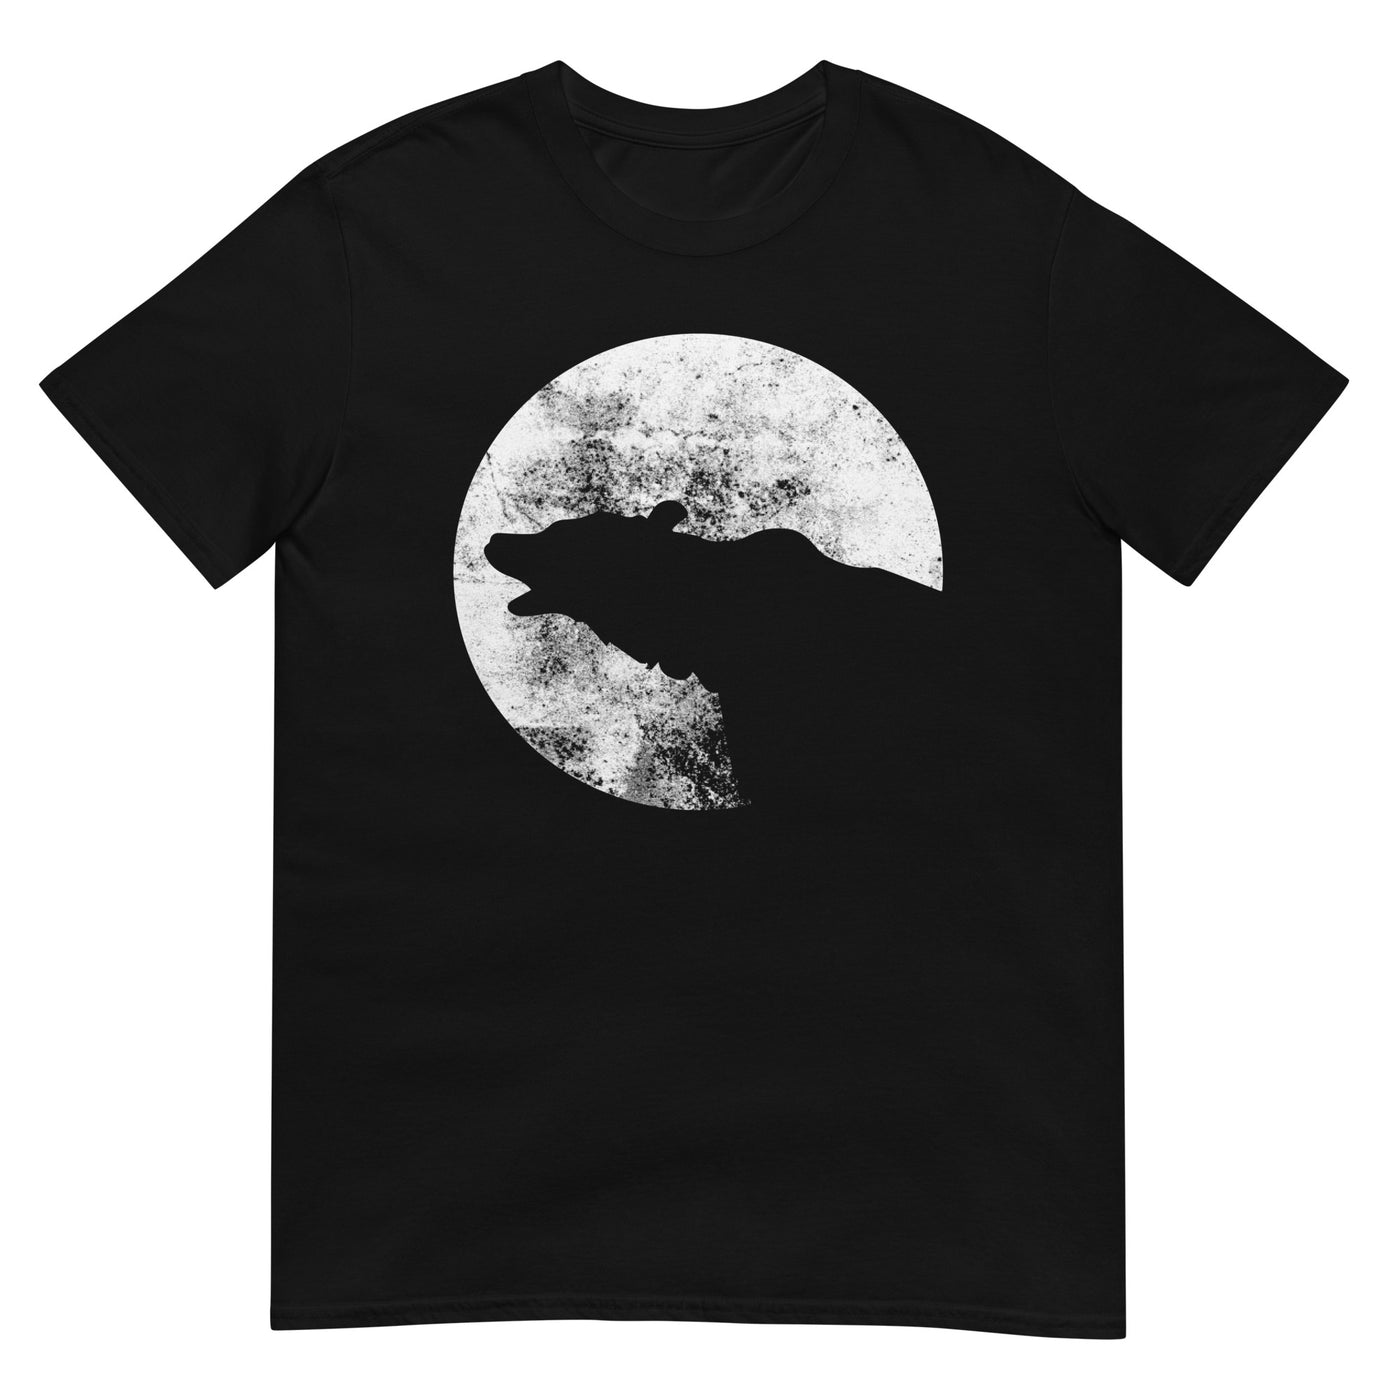 Moon - Bear - T-Shirt (Unisex) camping xxx yyy zzz Black